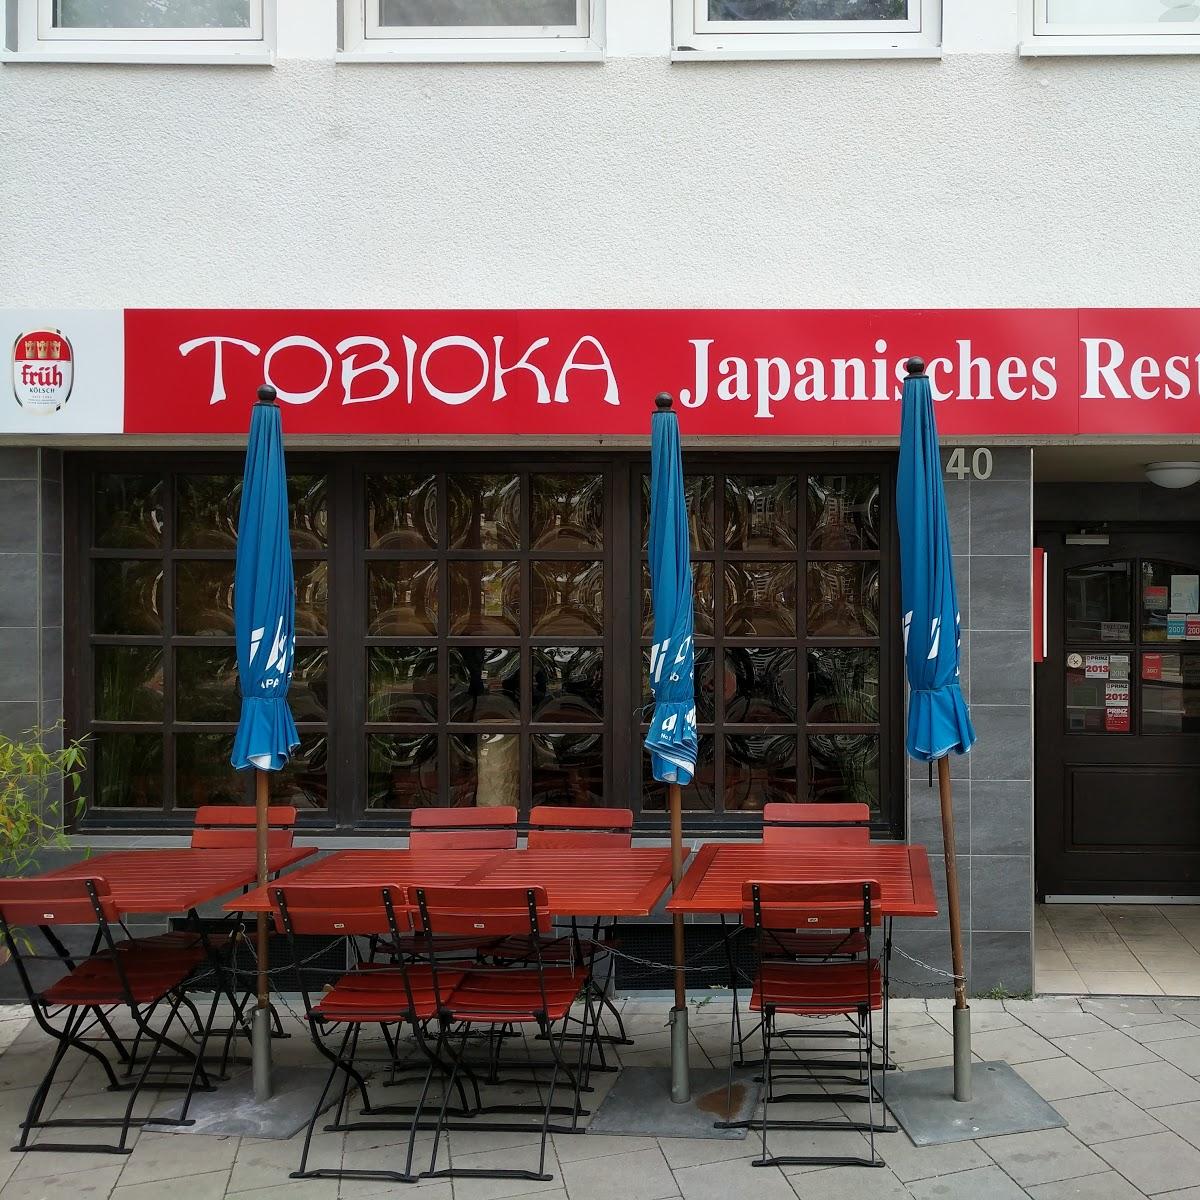 Restaurant "Tobioka" in Köln